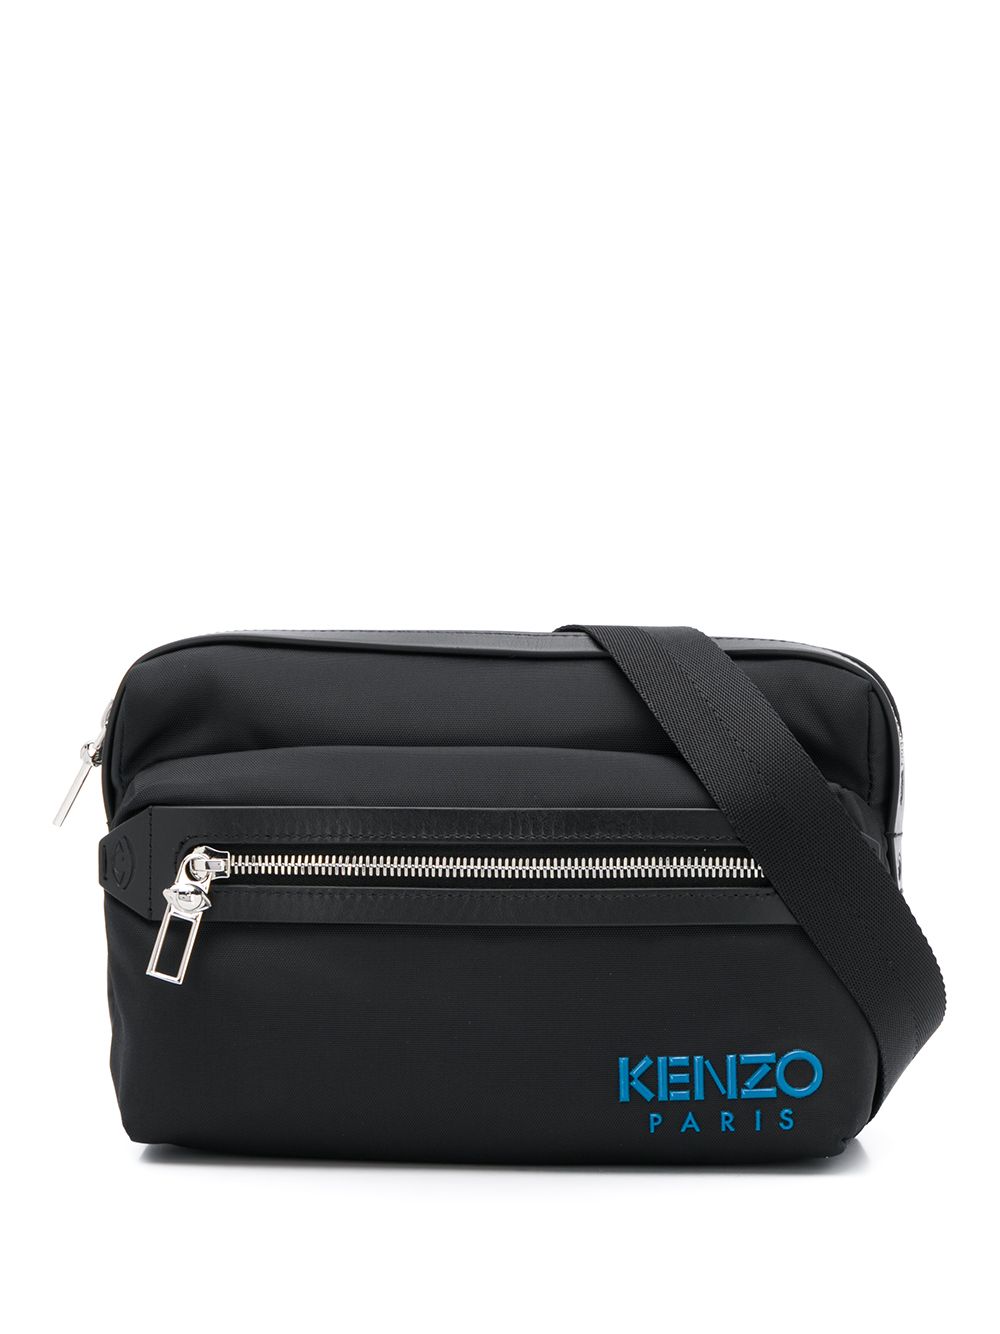 Kenzo Paris Belt Bag Ss20 | Farfetch.com